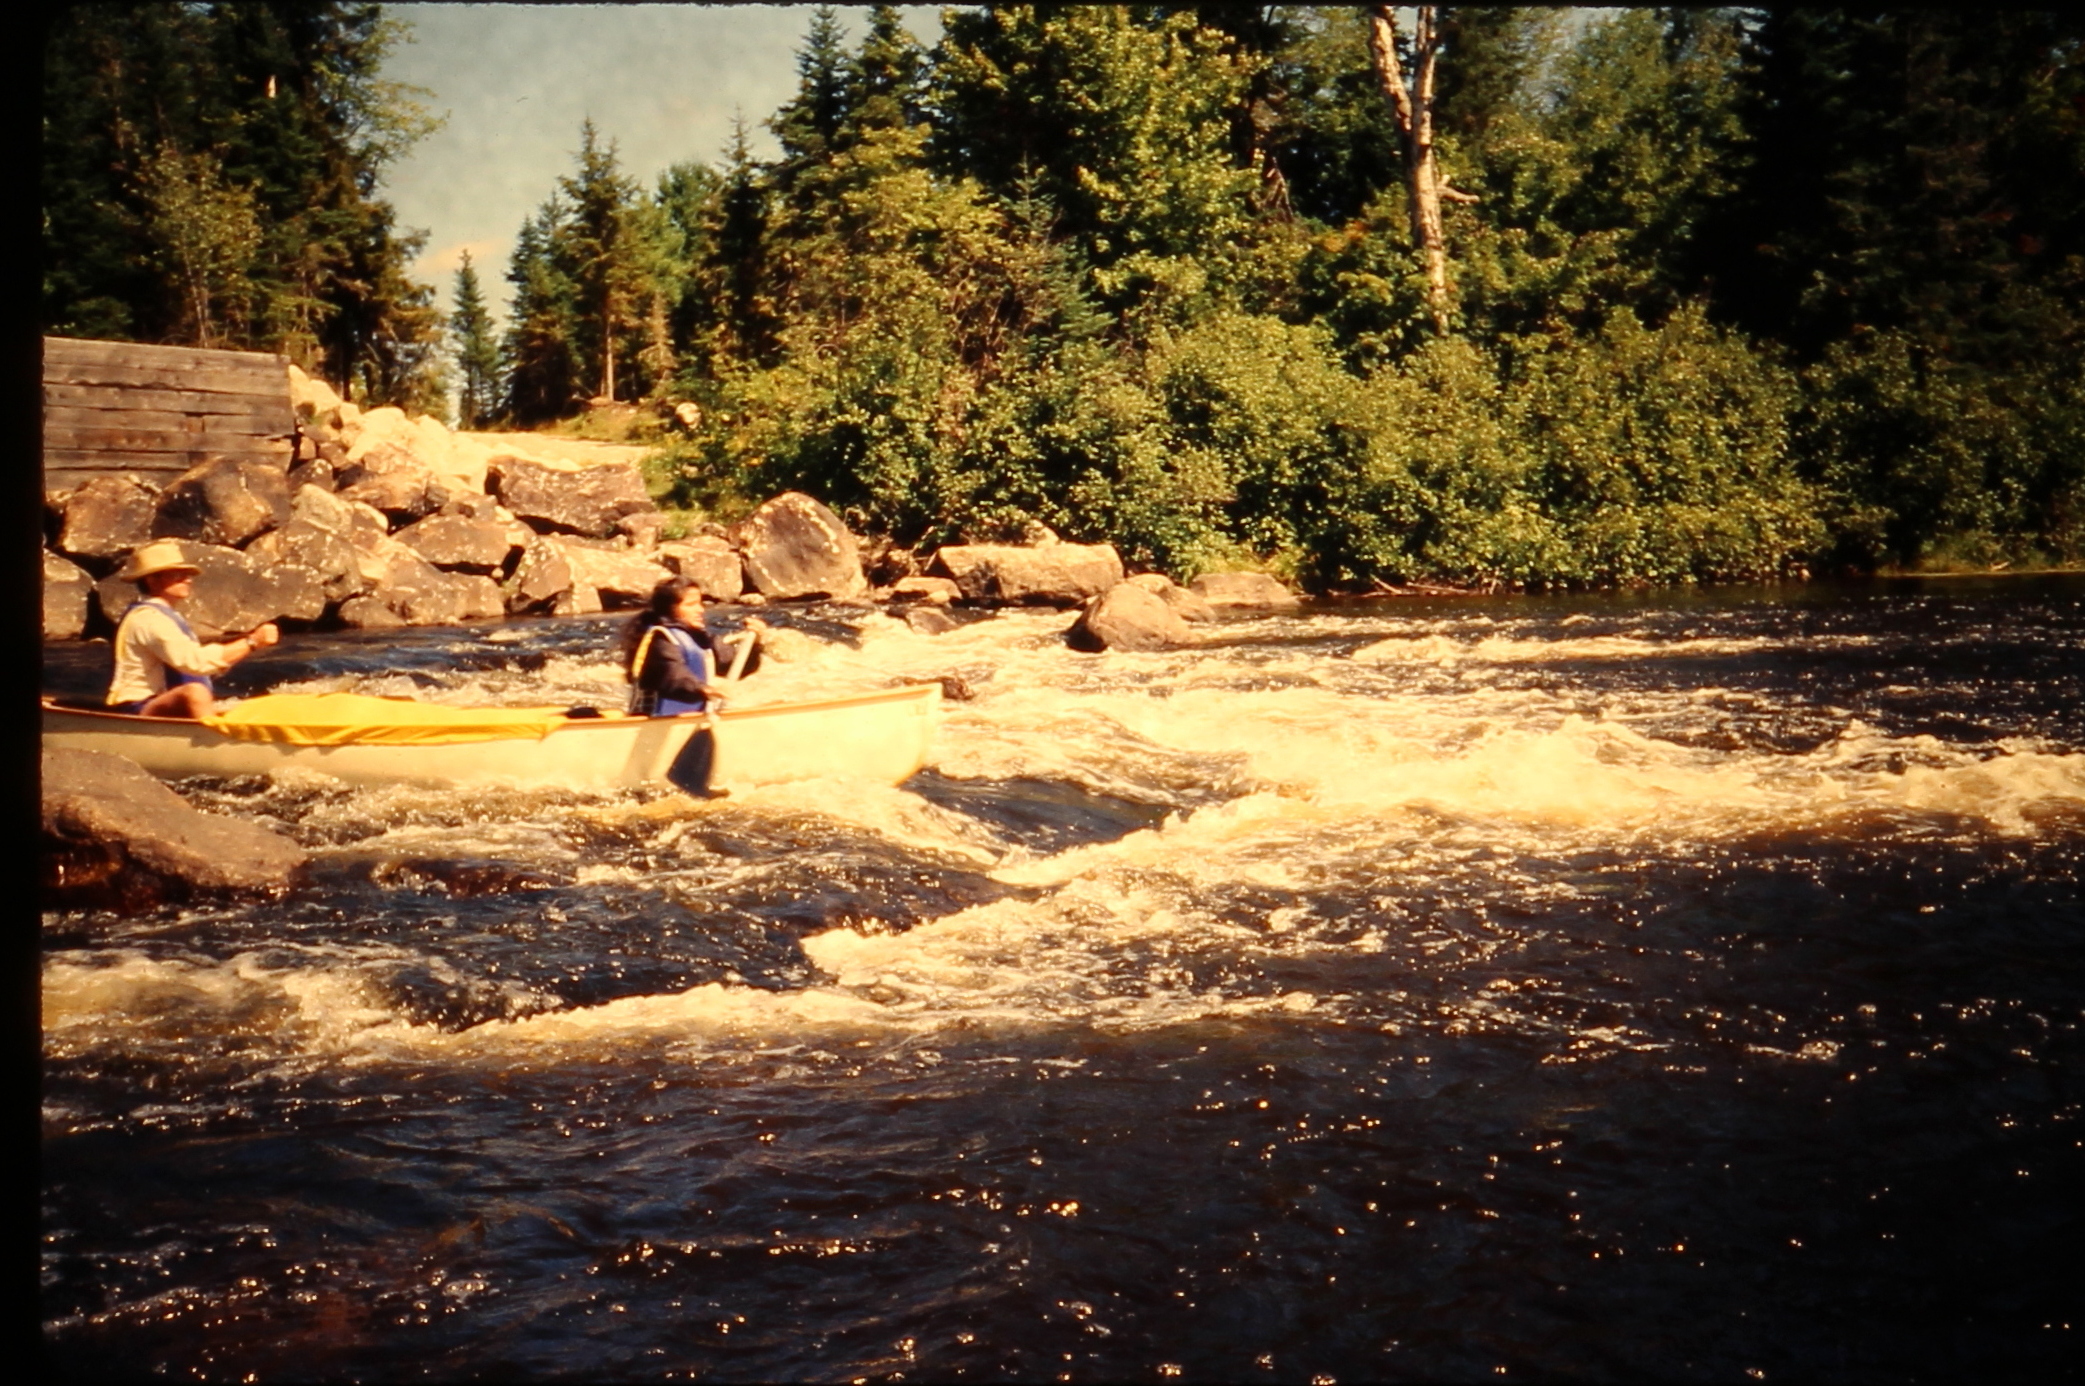 19890902.24 - USA ME -- MooseRiver - Jerry Lakshmi - Moose River Rapids 1 - MB01T01B10S24.JPG